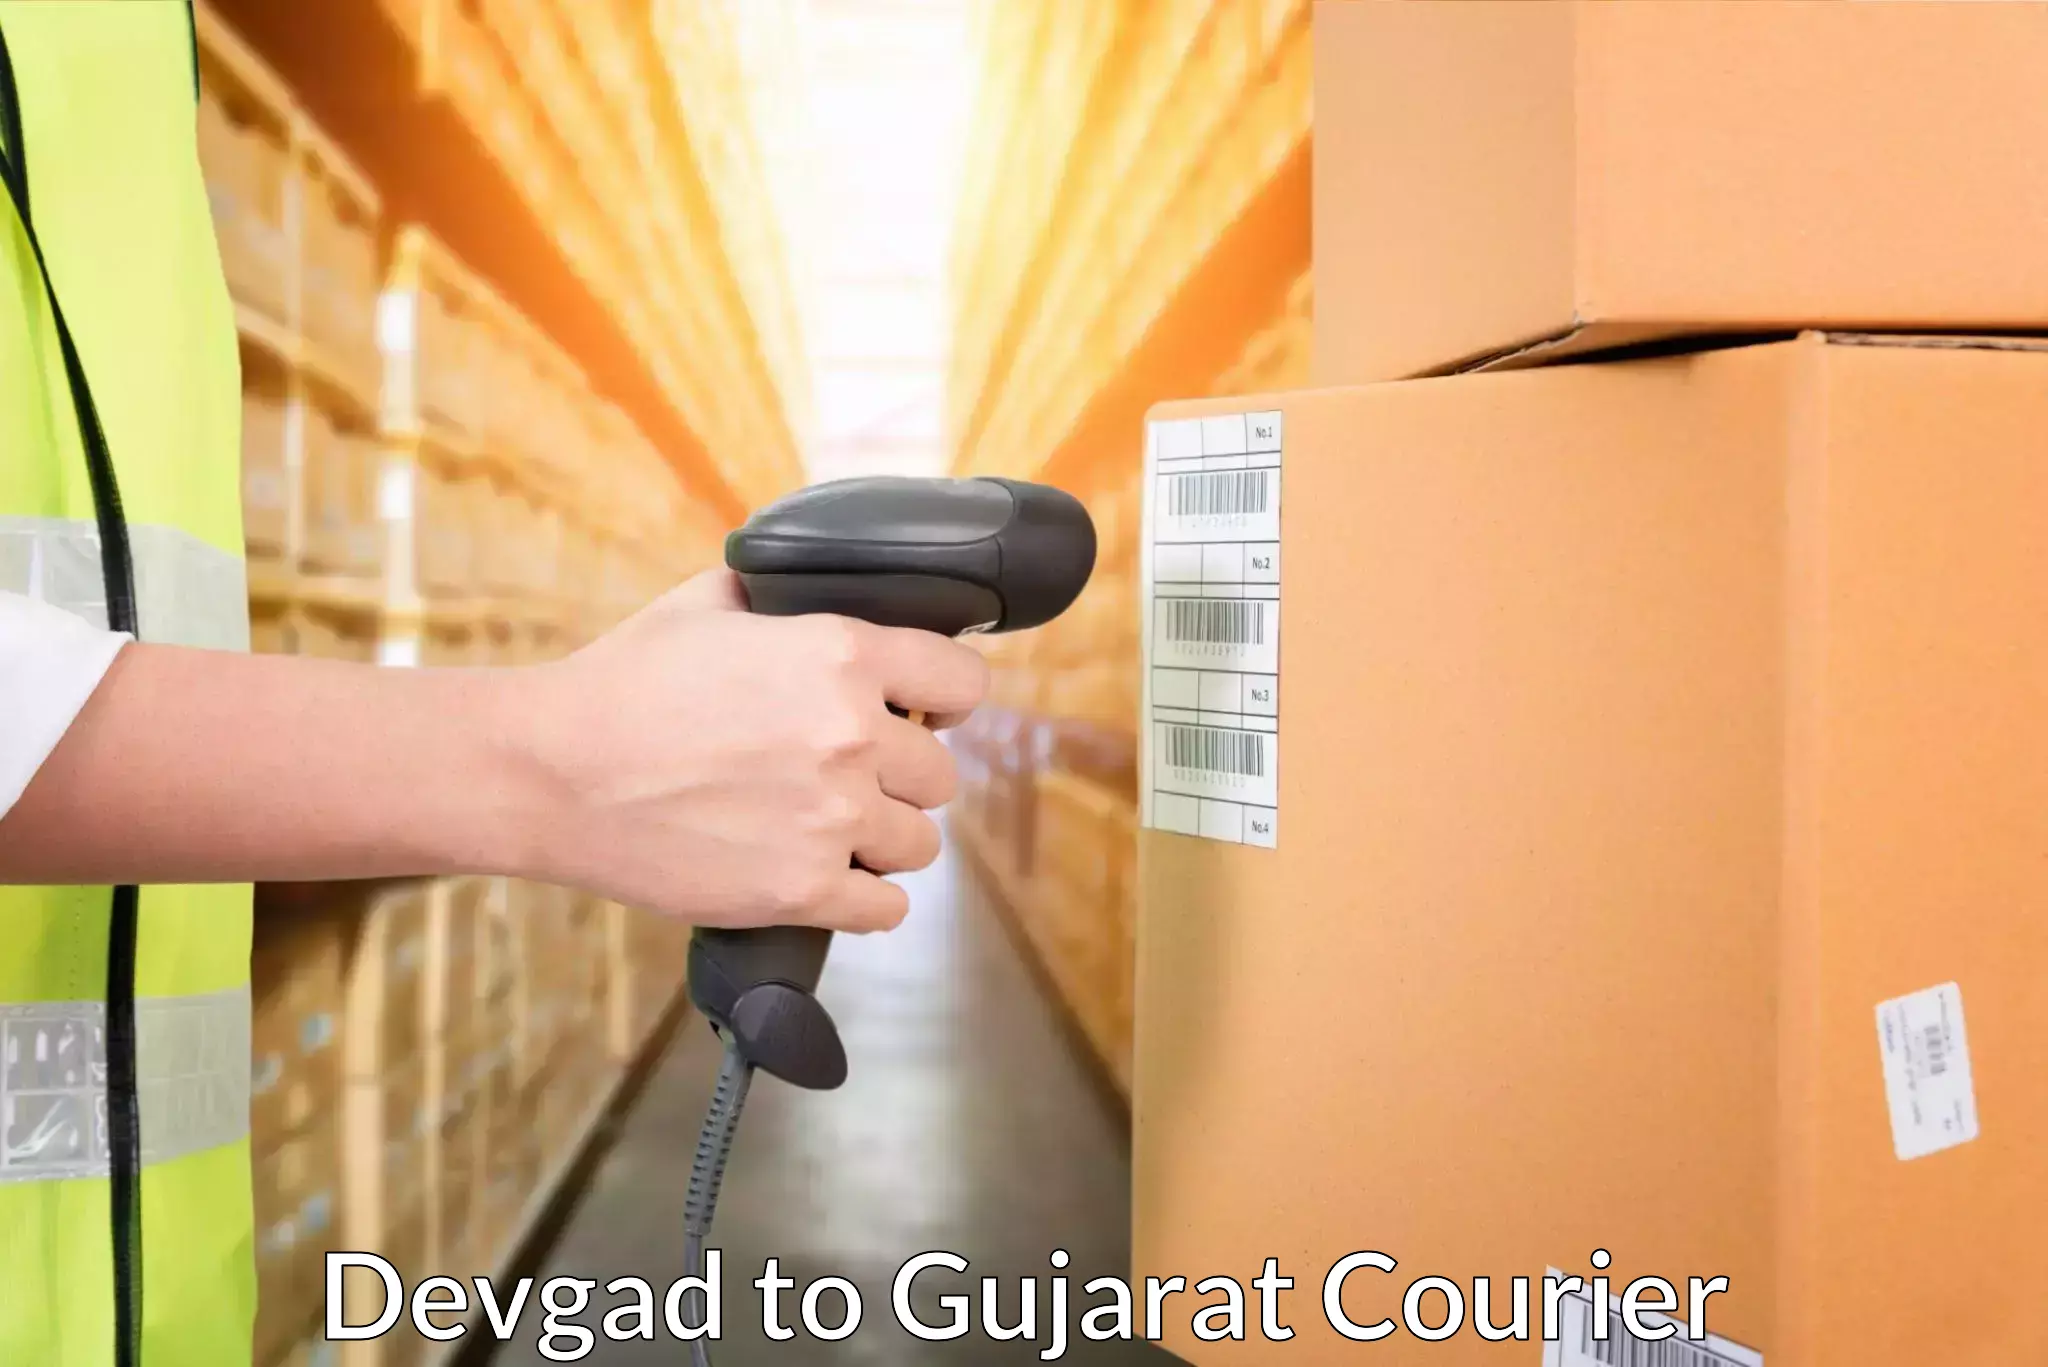 24-hour courier services Devgad to Gujarat